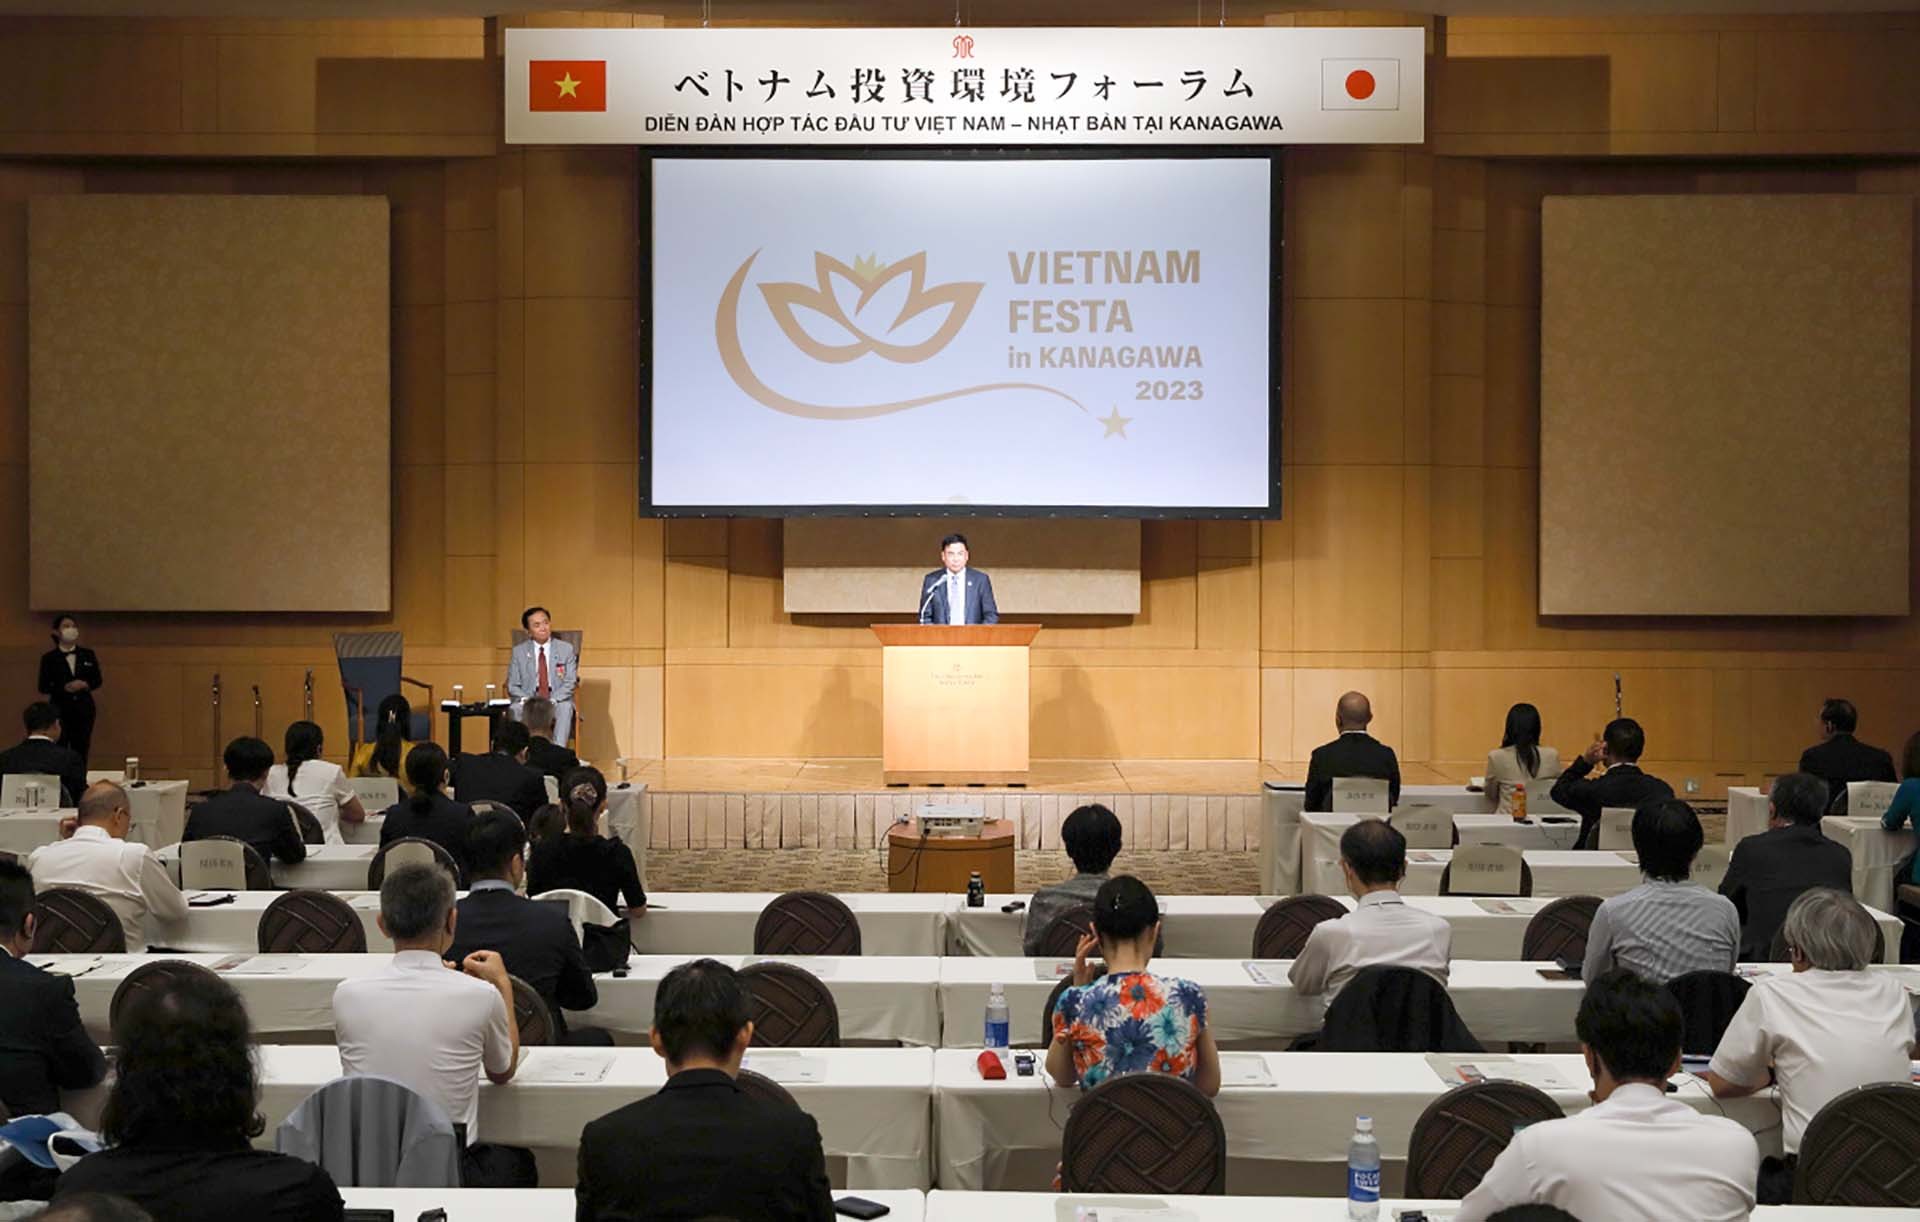 Đại sứ Phạm Quang Hiệu phát biểu tại Diễn đàn hợp tác đầu tư Việt Nam-Nhật Bản tại Kanagawa.